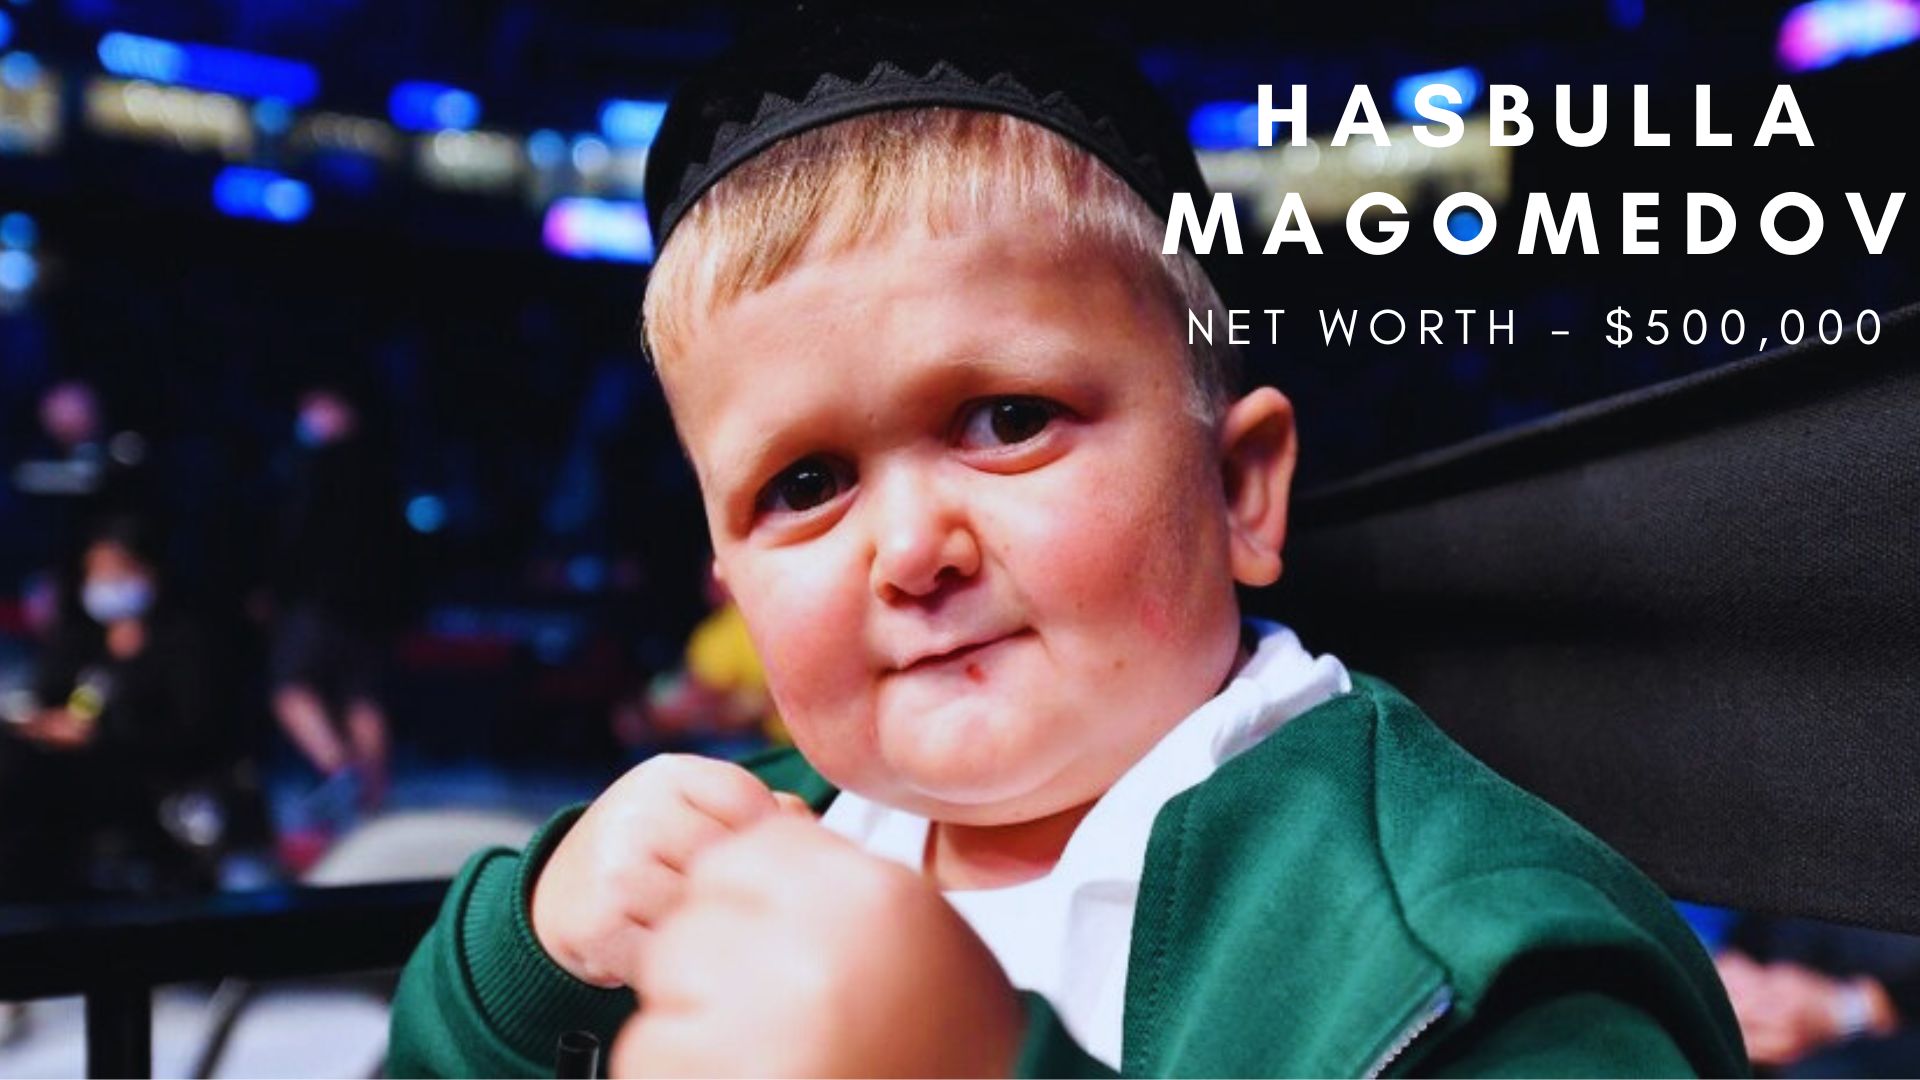 Hasbulla Magomedov net worth